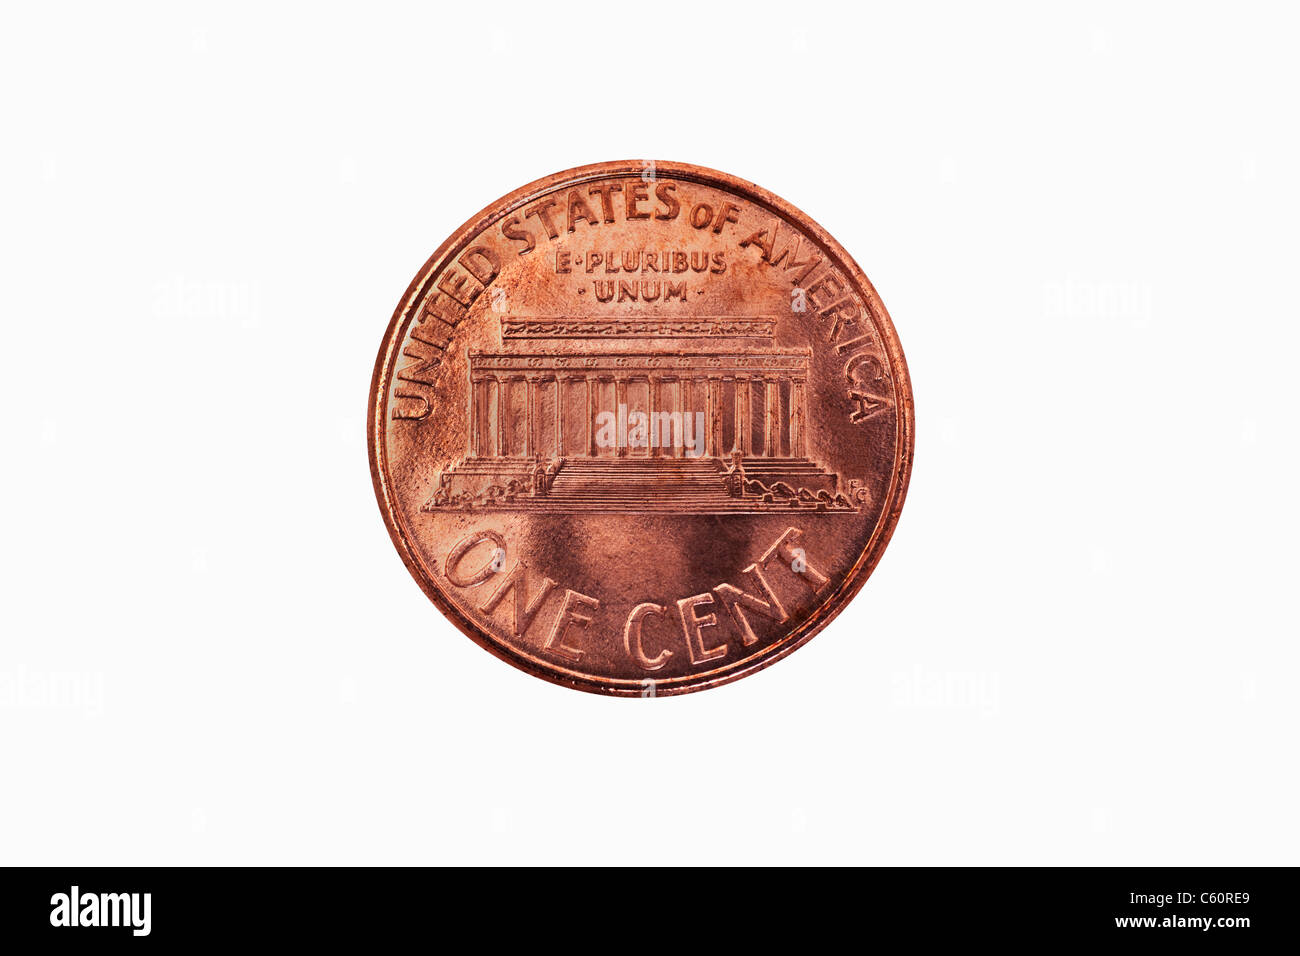 Detailansicht einer US-Amerikanischen 1 Cent Münze aus dem Jahr 1998 | Detail photo of a 1 Cent coin of USA from the year 1998 Stock Photo